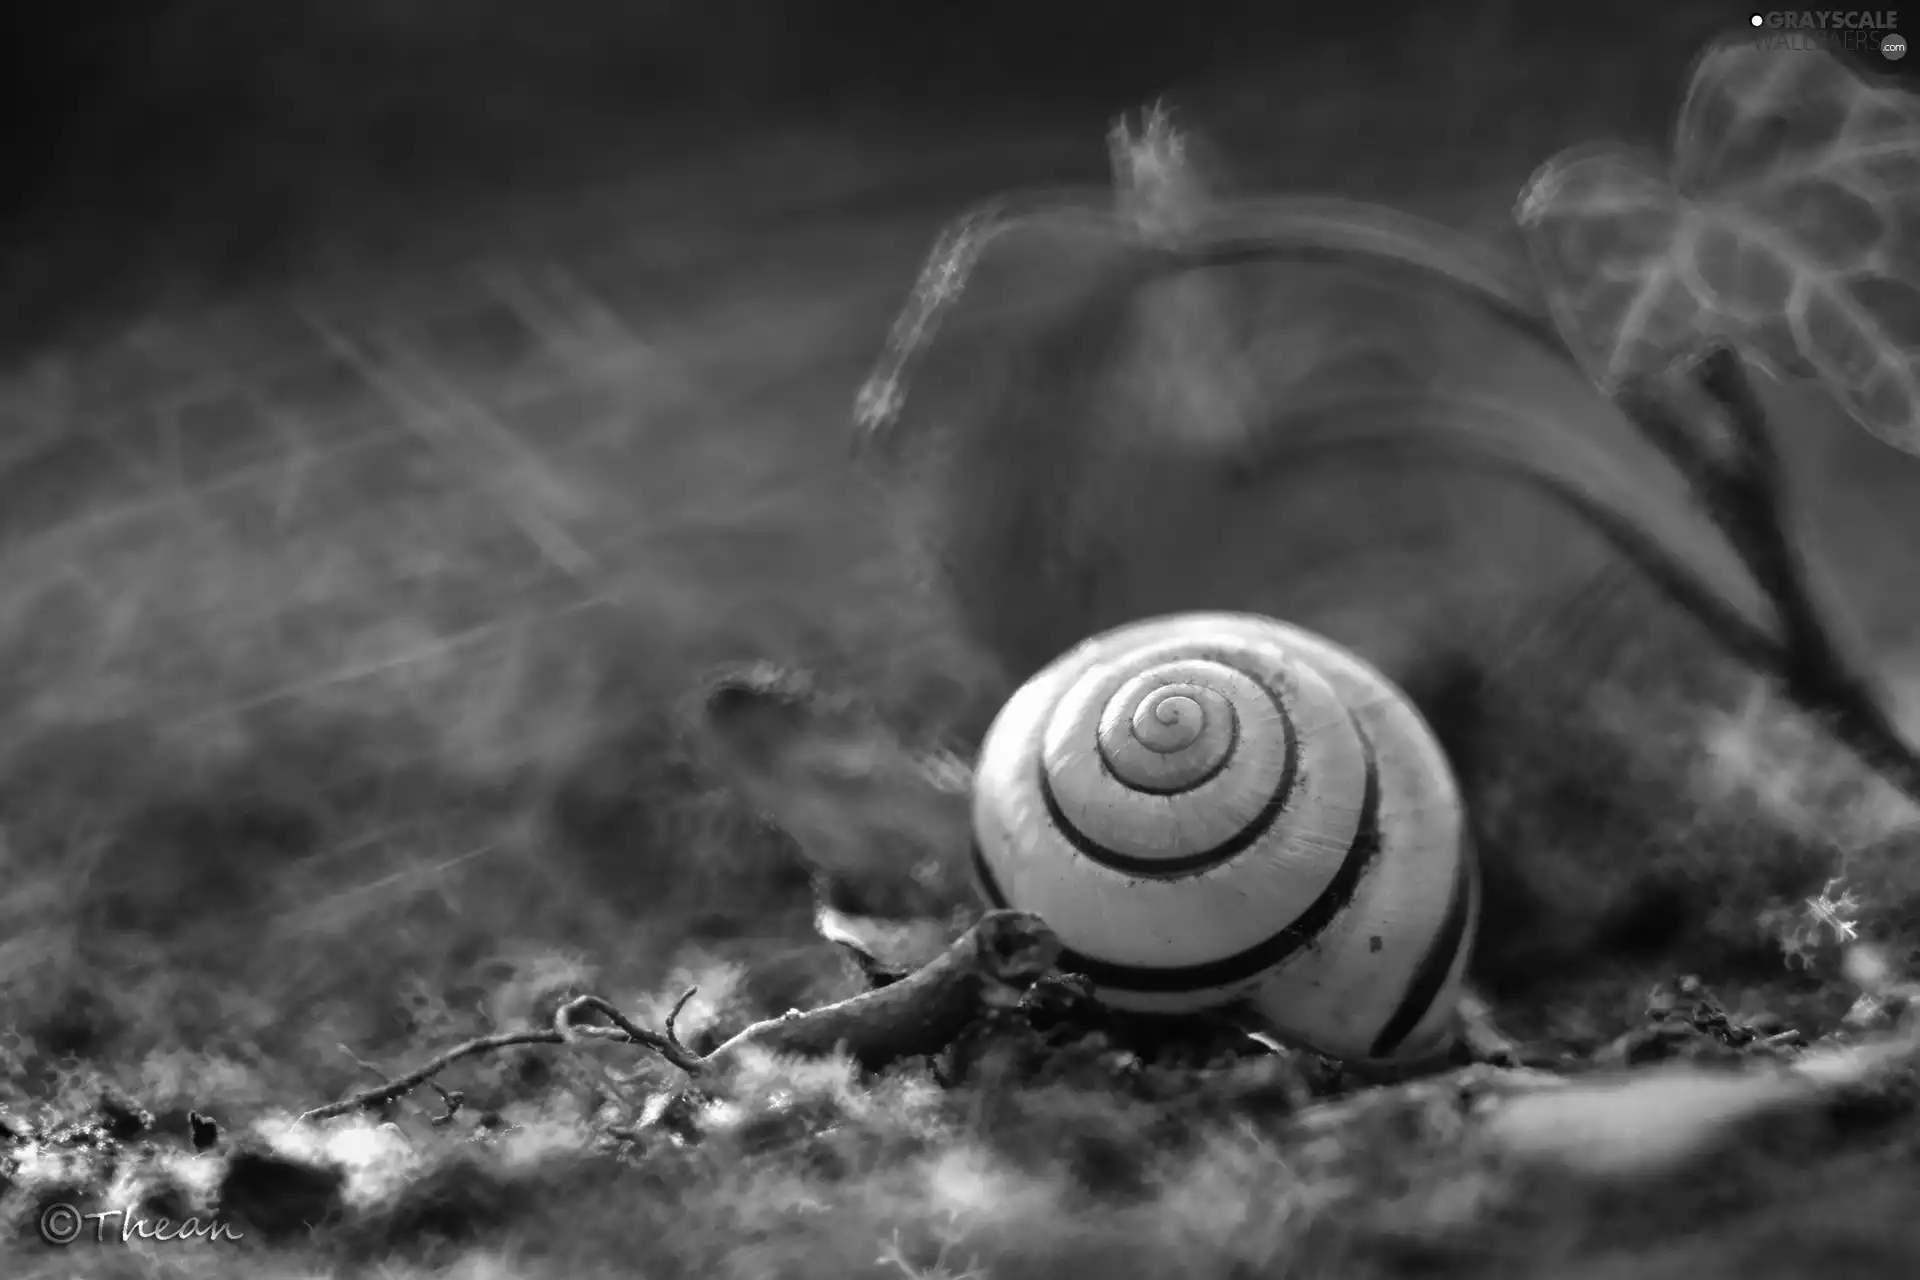 shell, snail